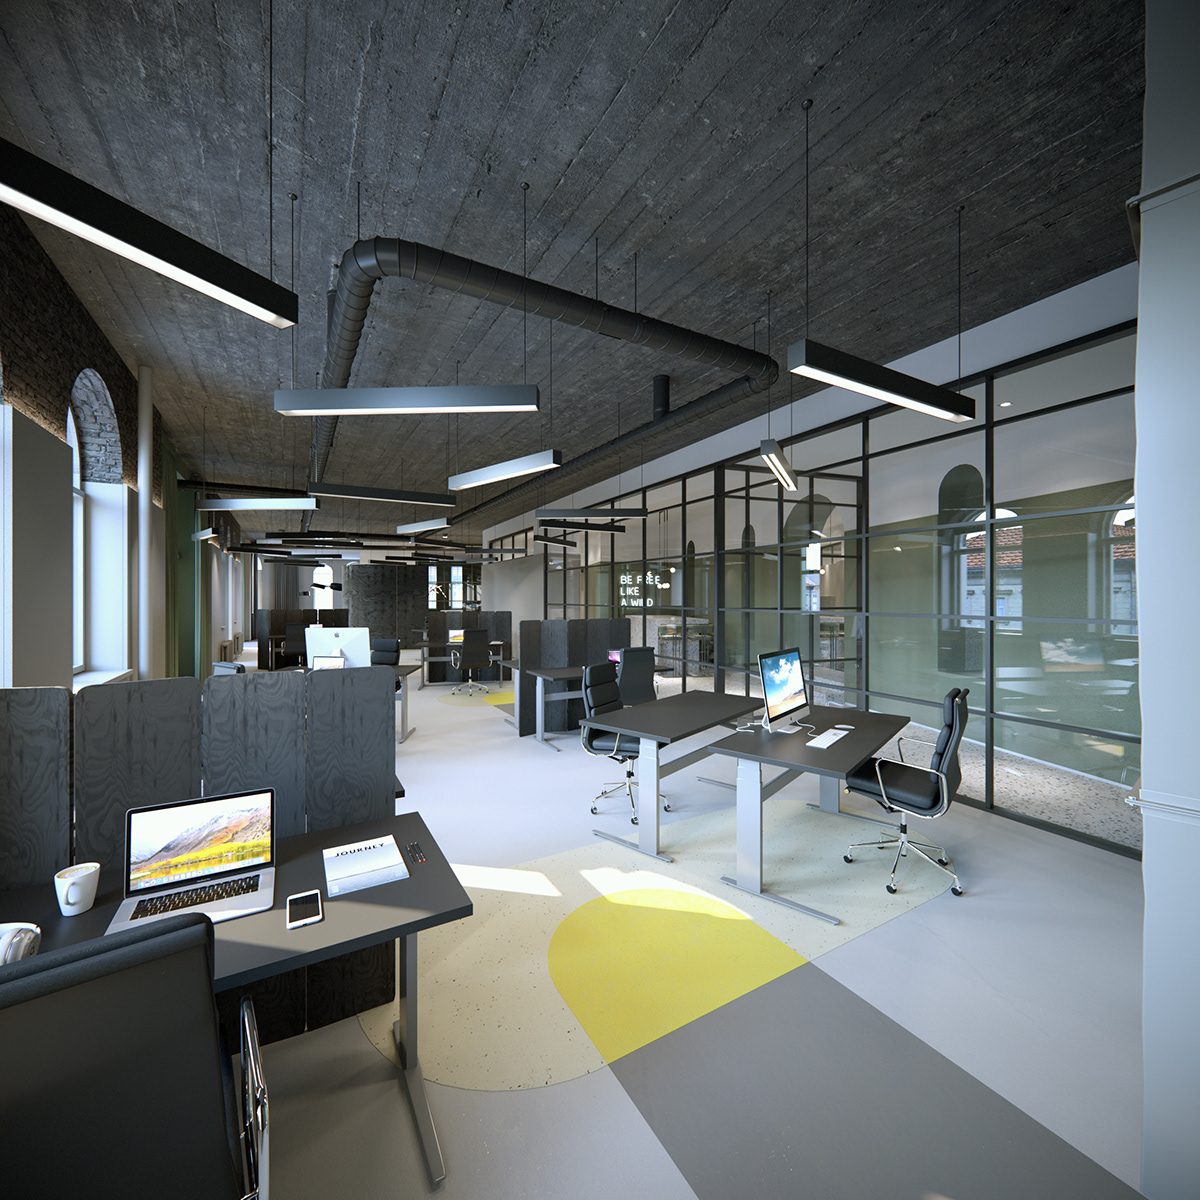 Interior officedesign interiorarchitecture visualization